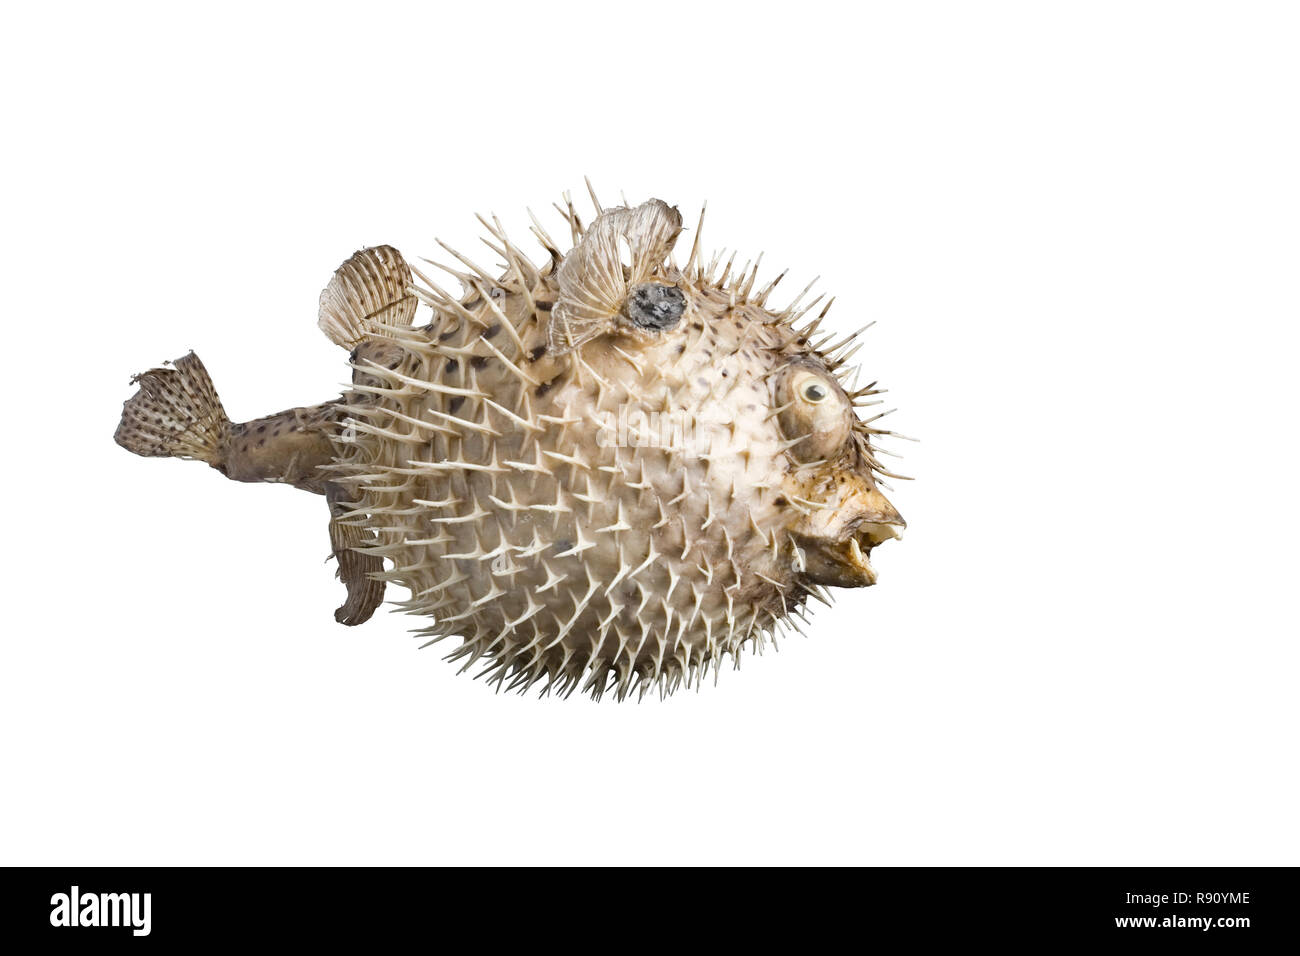 hedgehog fish isolated on empty white background Stock Photo